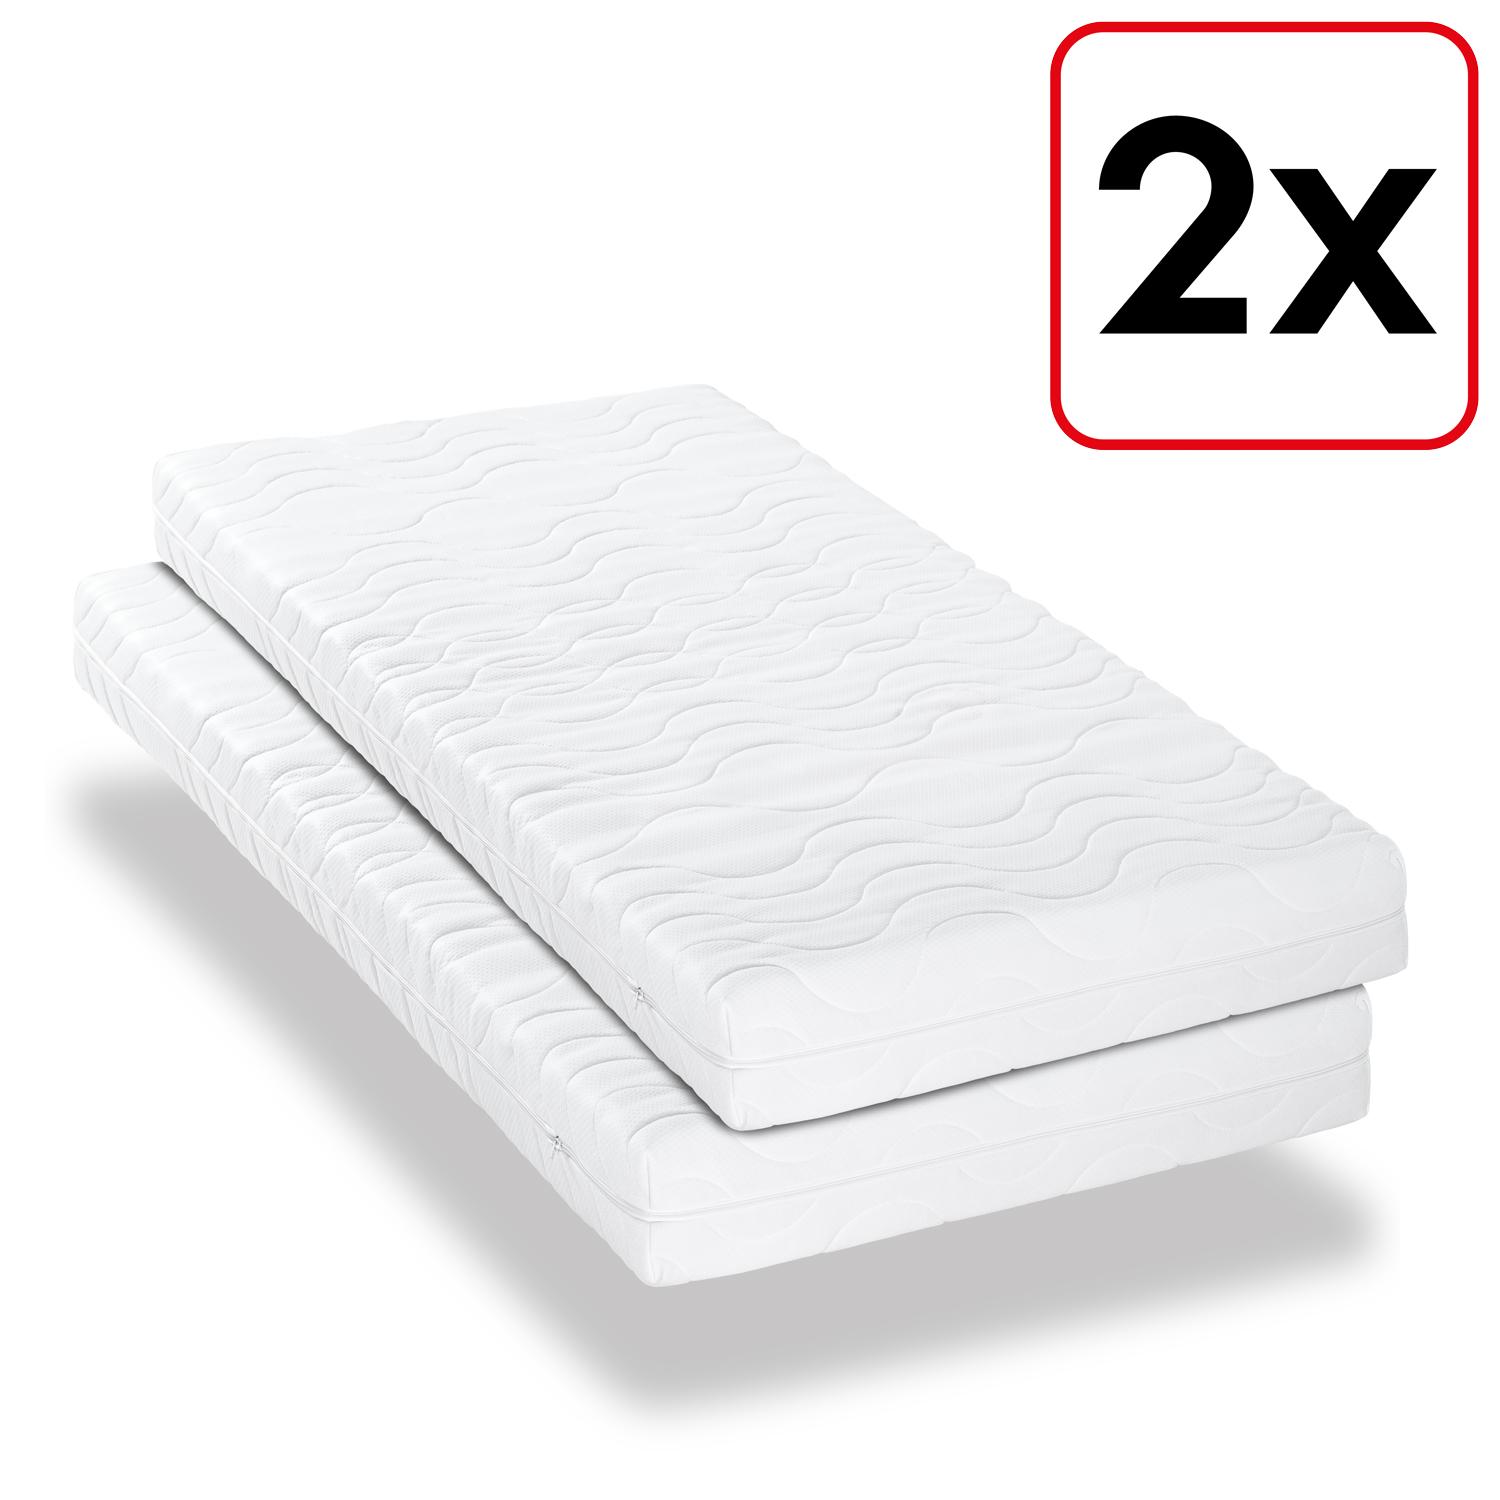 Çift kişilik premium 7 bölgeli yatak 80x200 cm CloudComfort, yükseklik 15 cm, sertlik seviyesi H2/H3, ikiz set